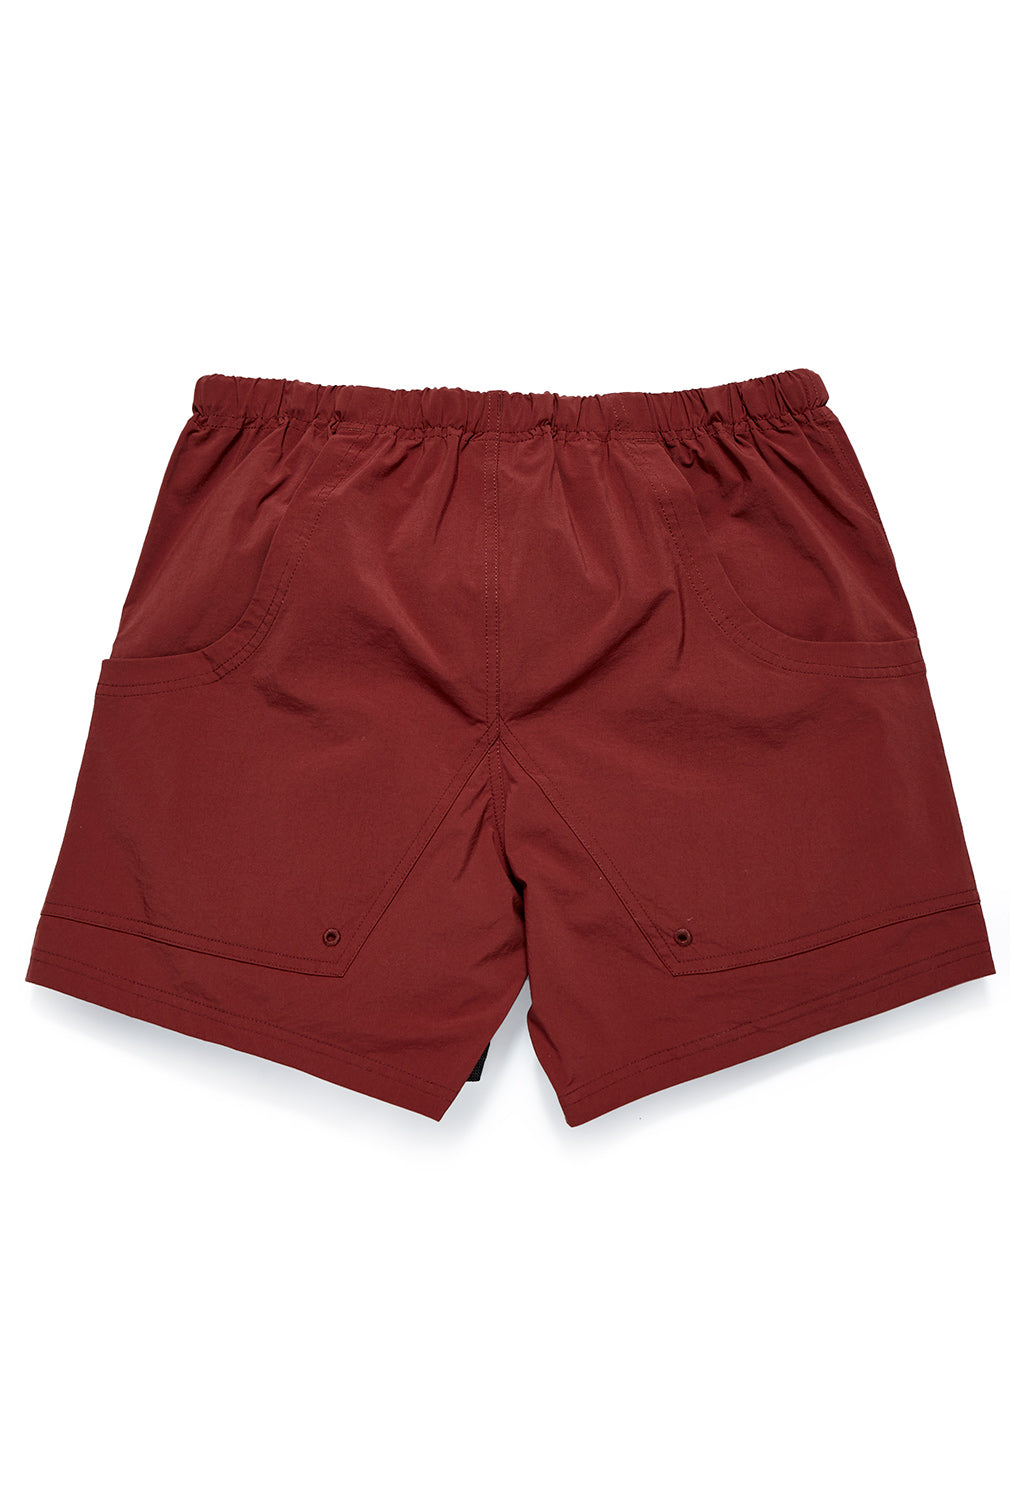 Pa'lante Packs Men's Shorts - Redwood